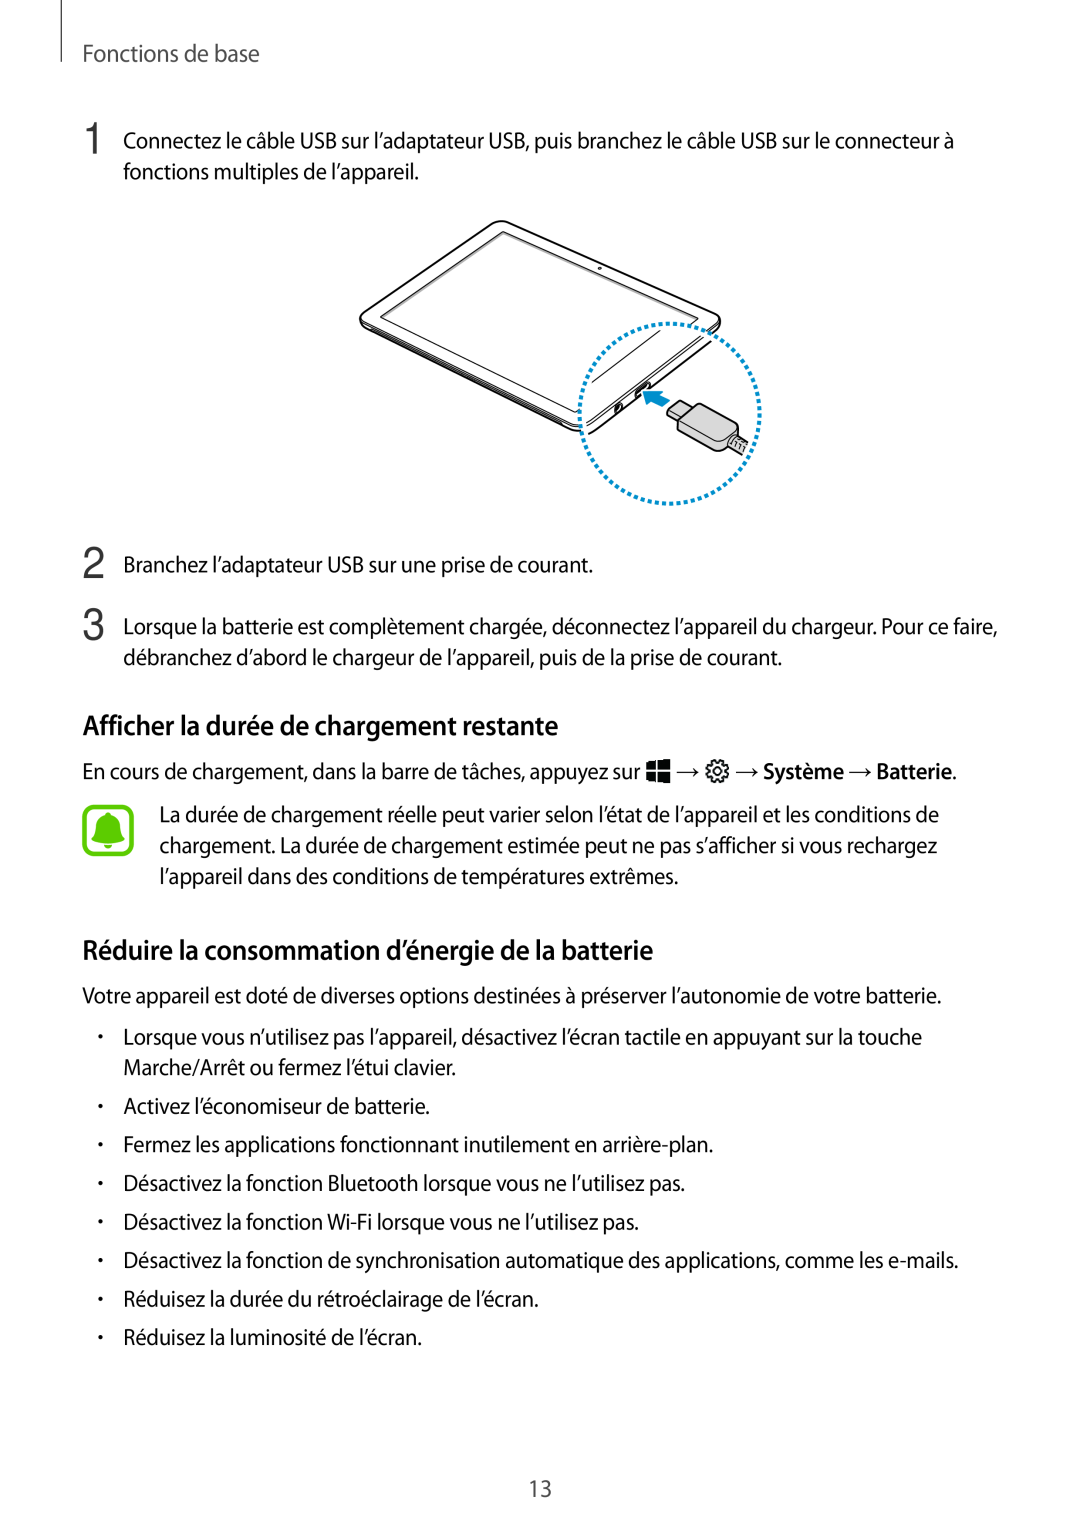 Samsung SM-W620NZKBXEF manual Afficher la durée de chargement restante, Réduire la consommation d’énergie de la batterie 